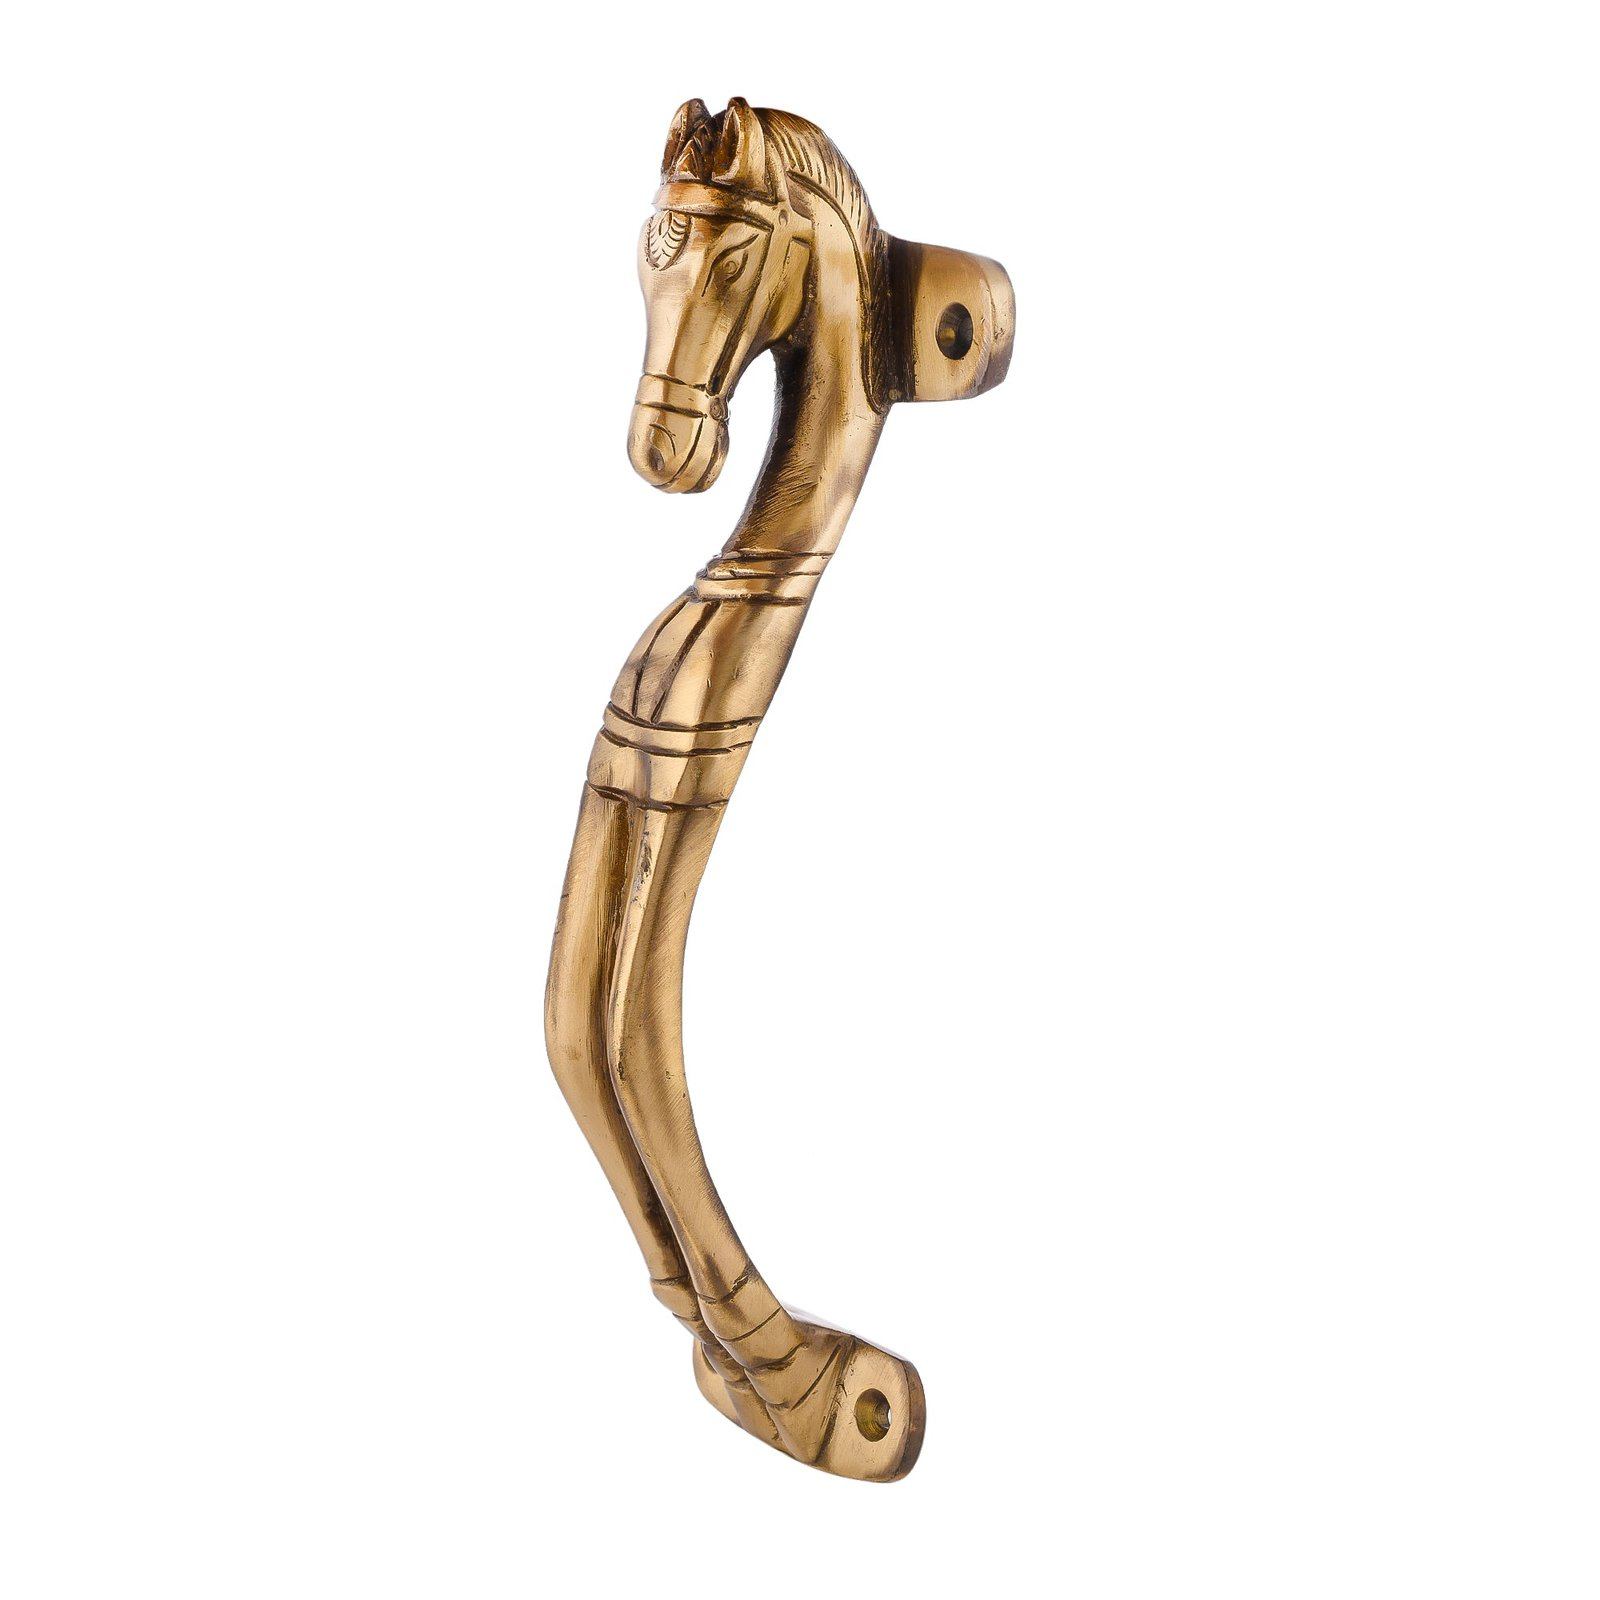 brass lever